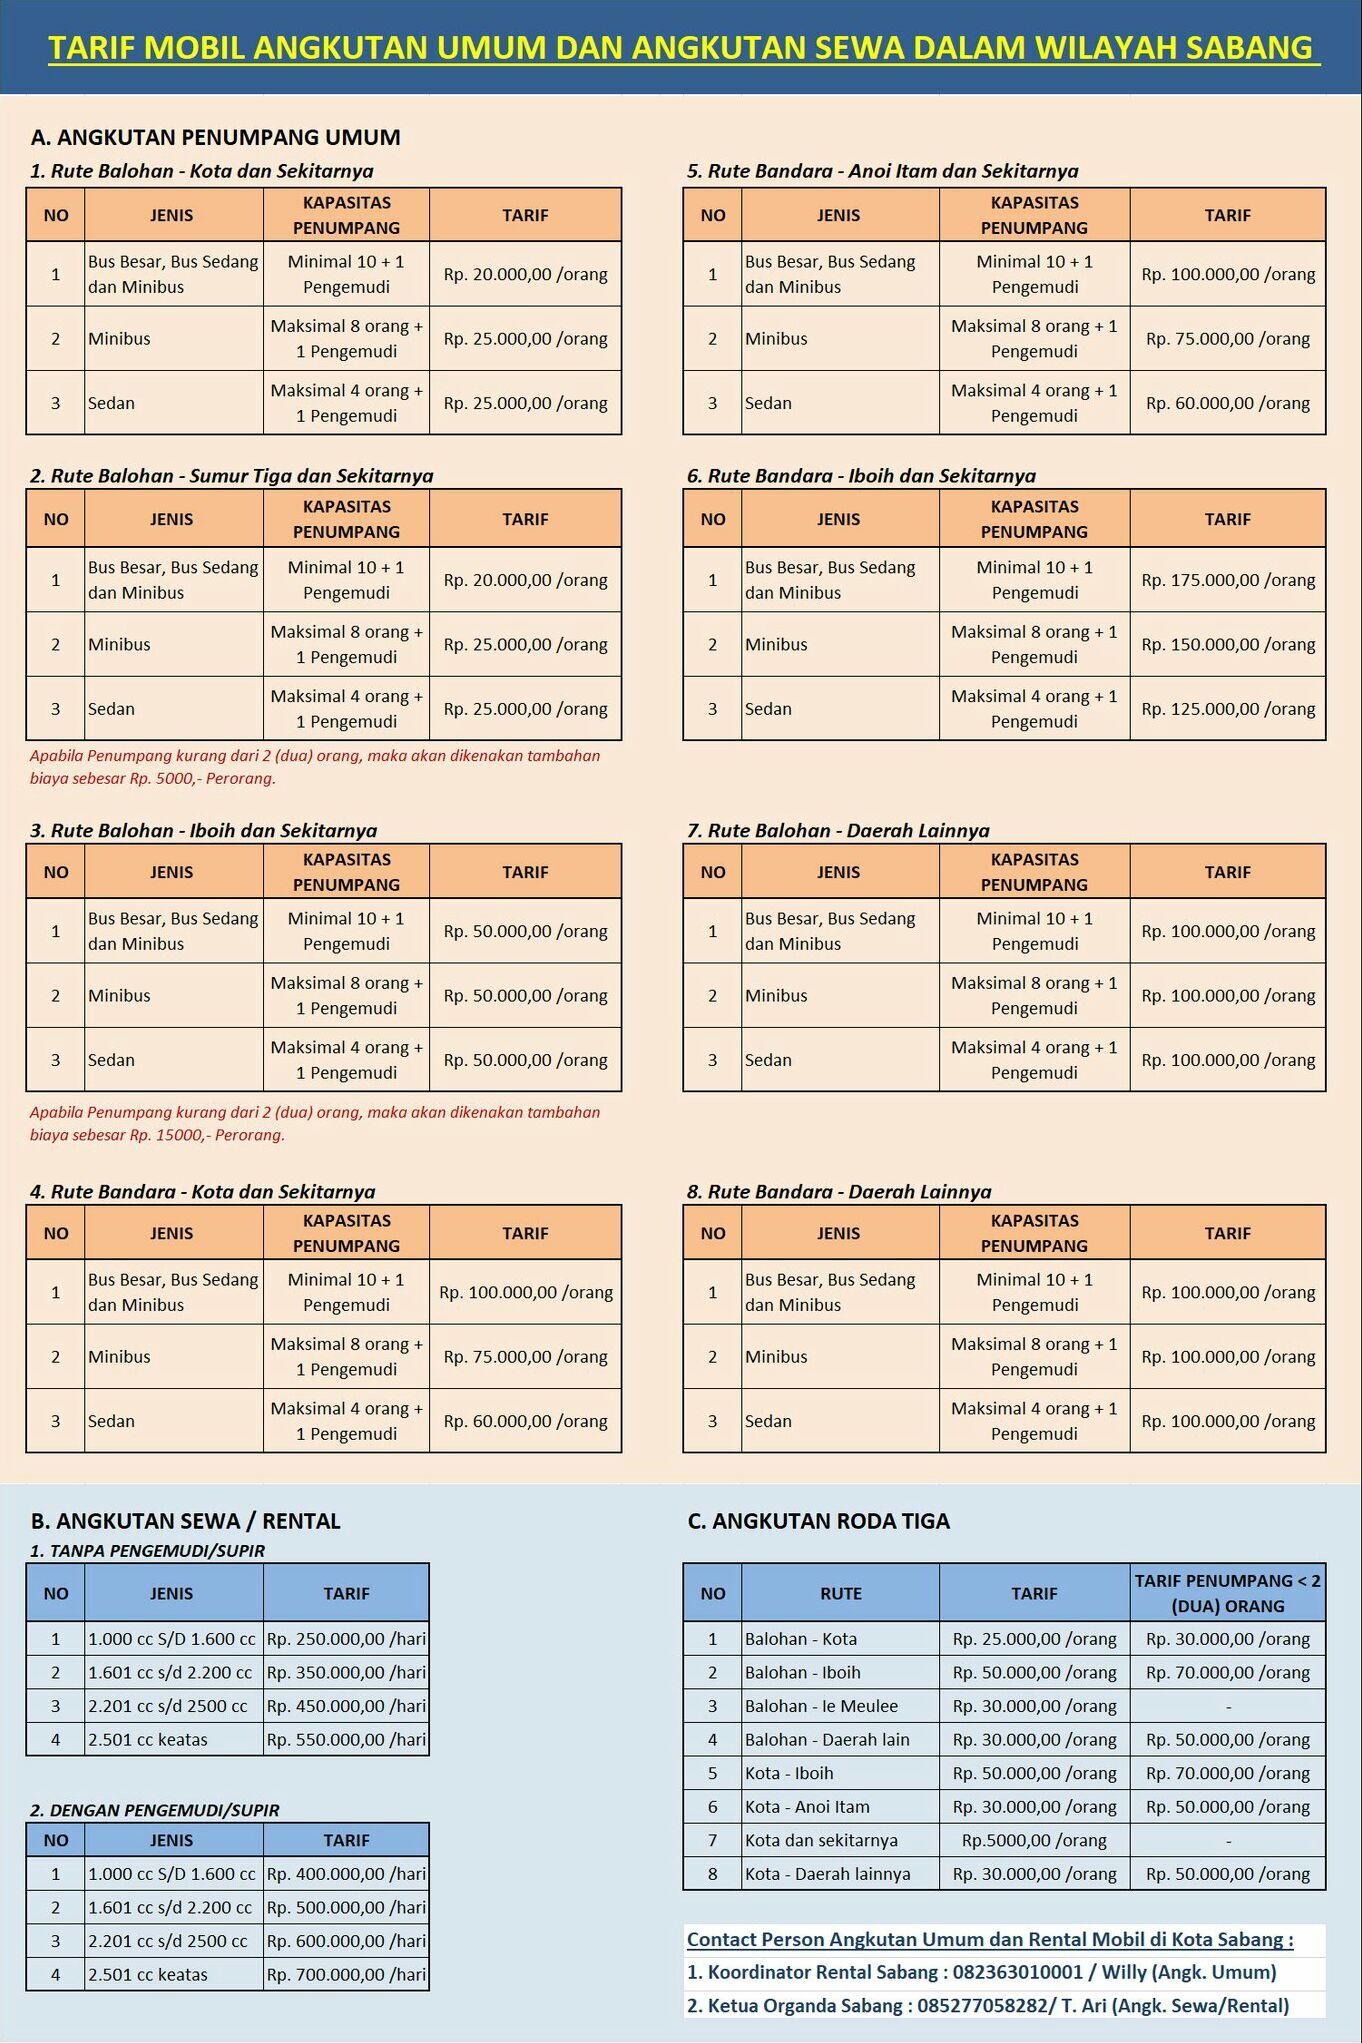 Daftar Tarif Angkutan Umum dan Sewa di Kota Sabang